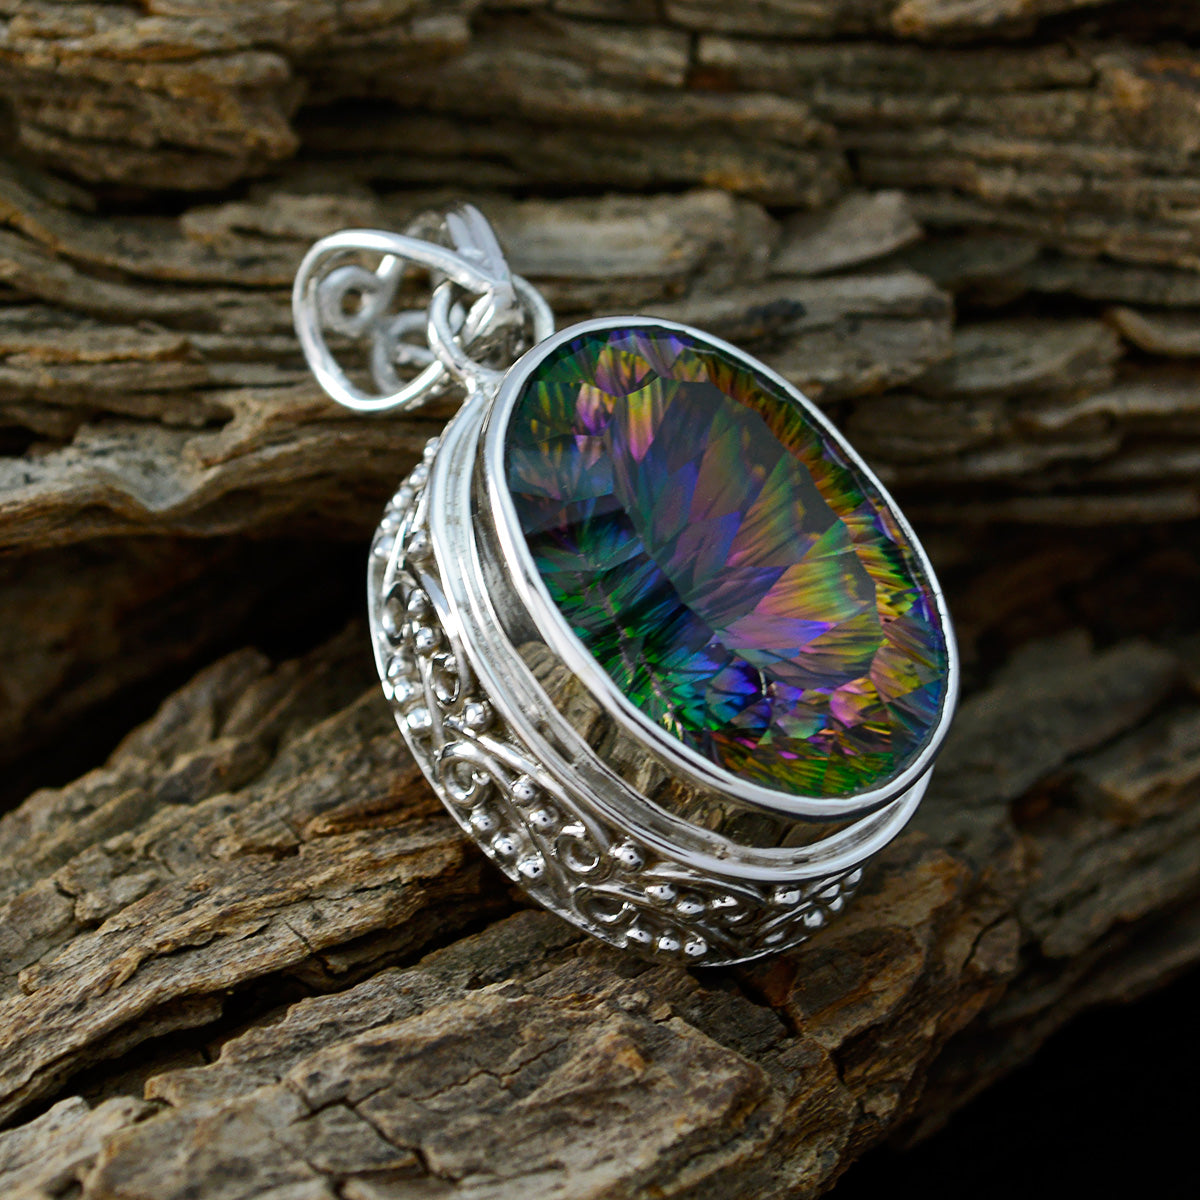 Riyo fit pierre précieuse ovale à facettes multicolore quartz mystique pendentif en argent sterling cadeau pour noël